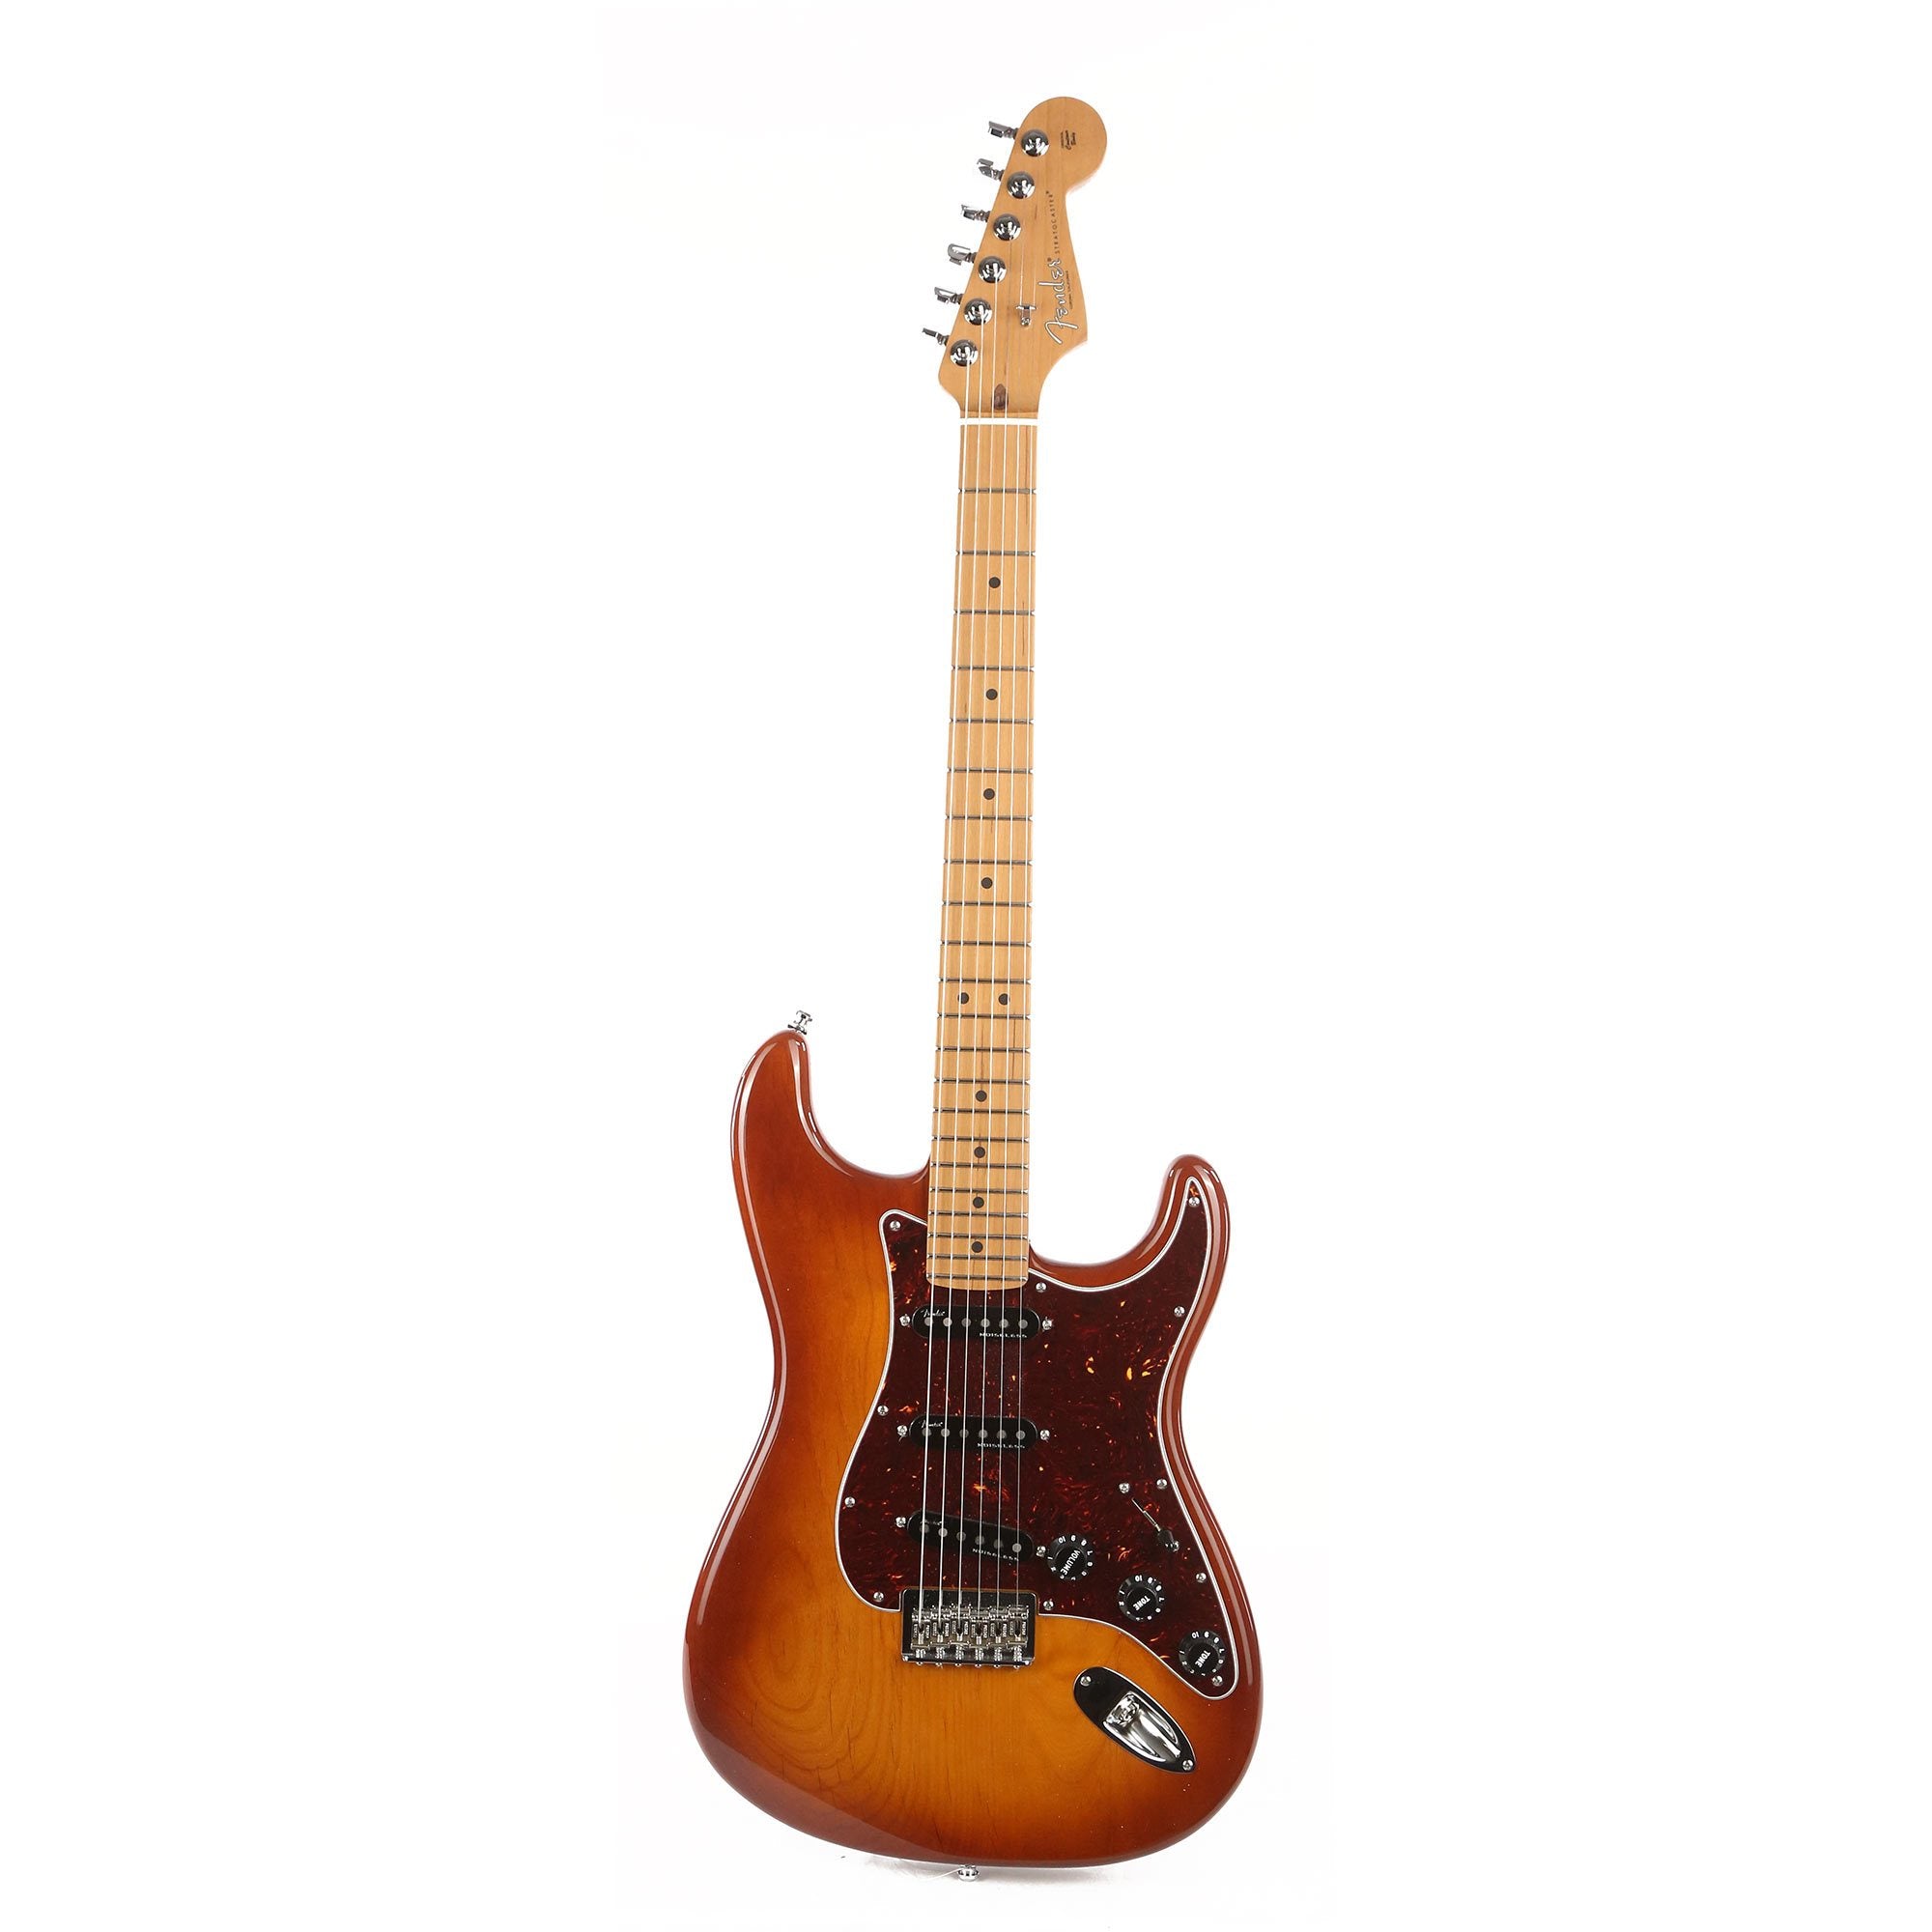 Fender Mod Shop Hardtail Stratocaster Tobacco Burst 2021 | The 